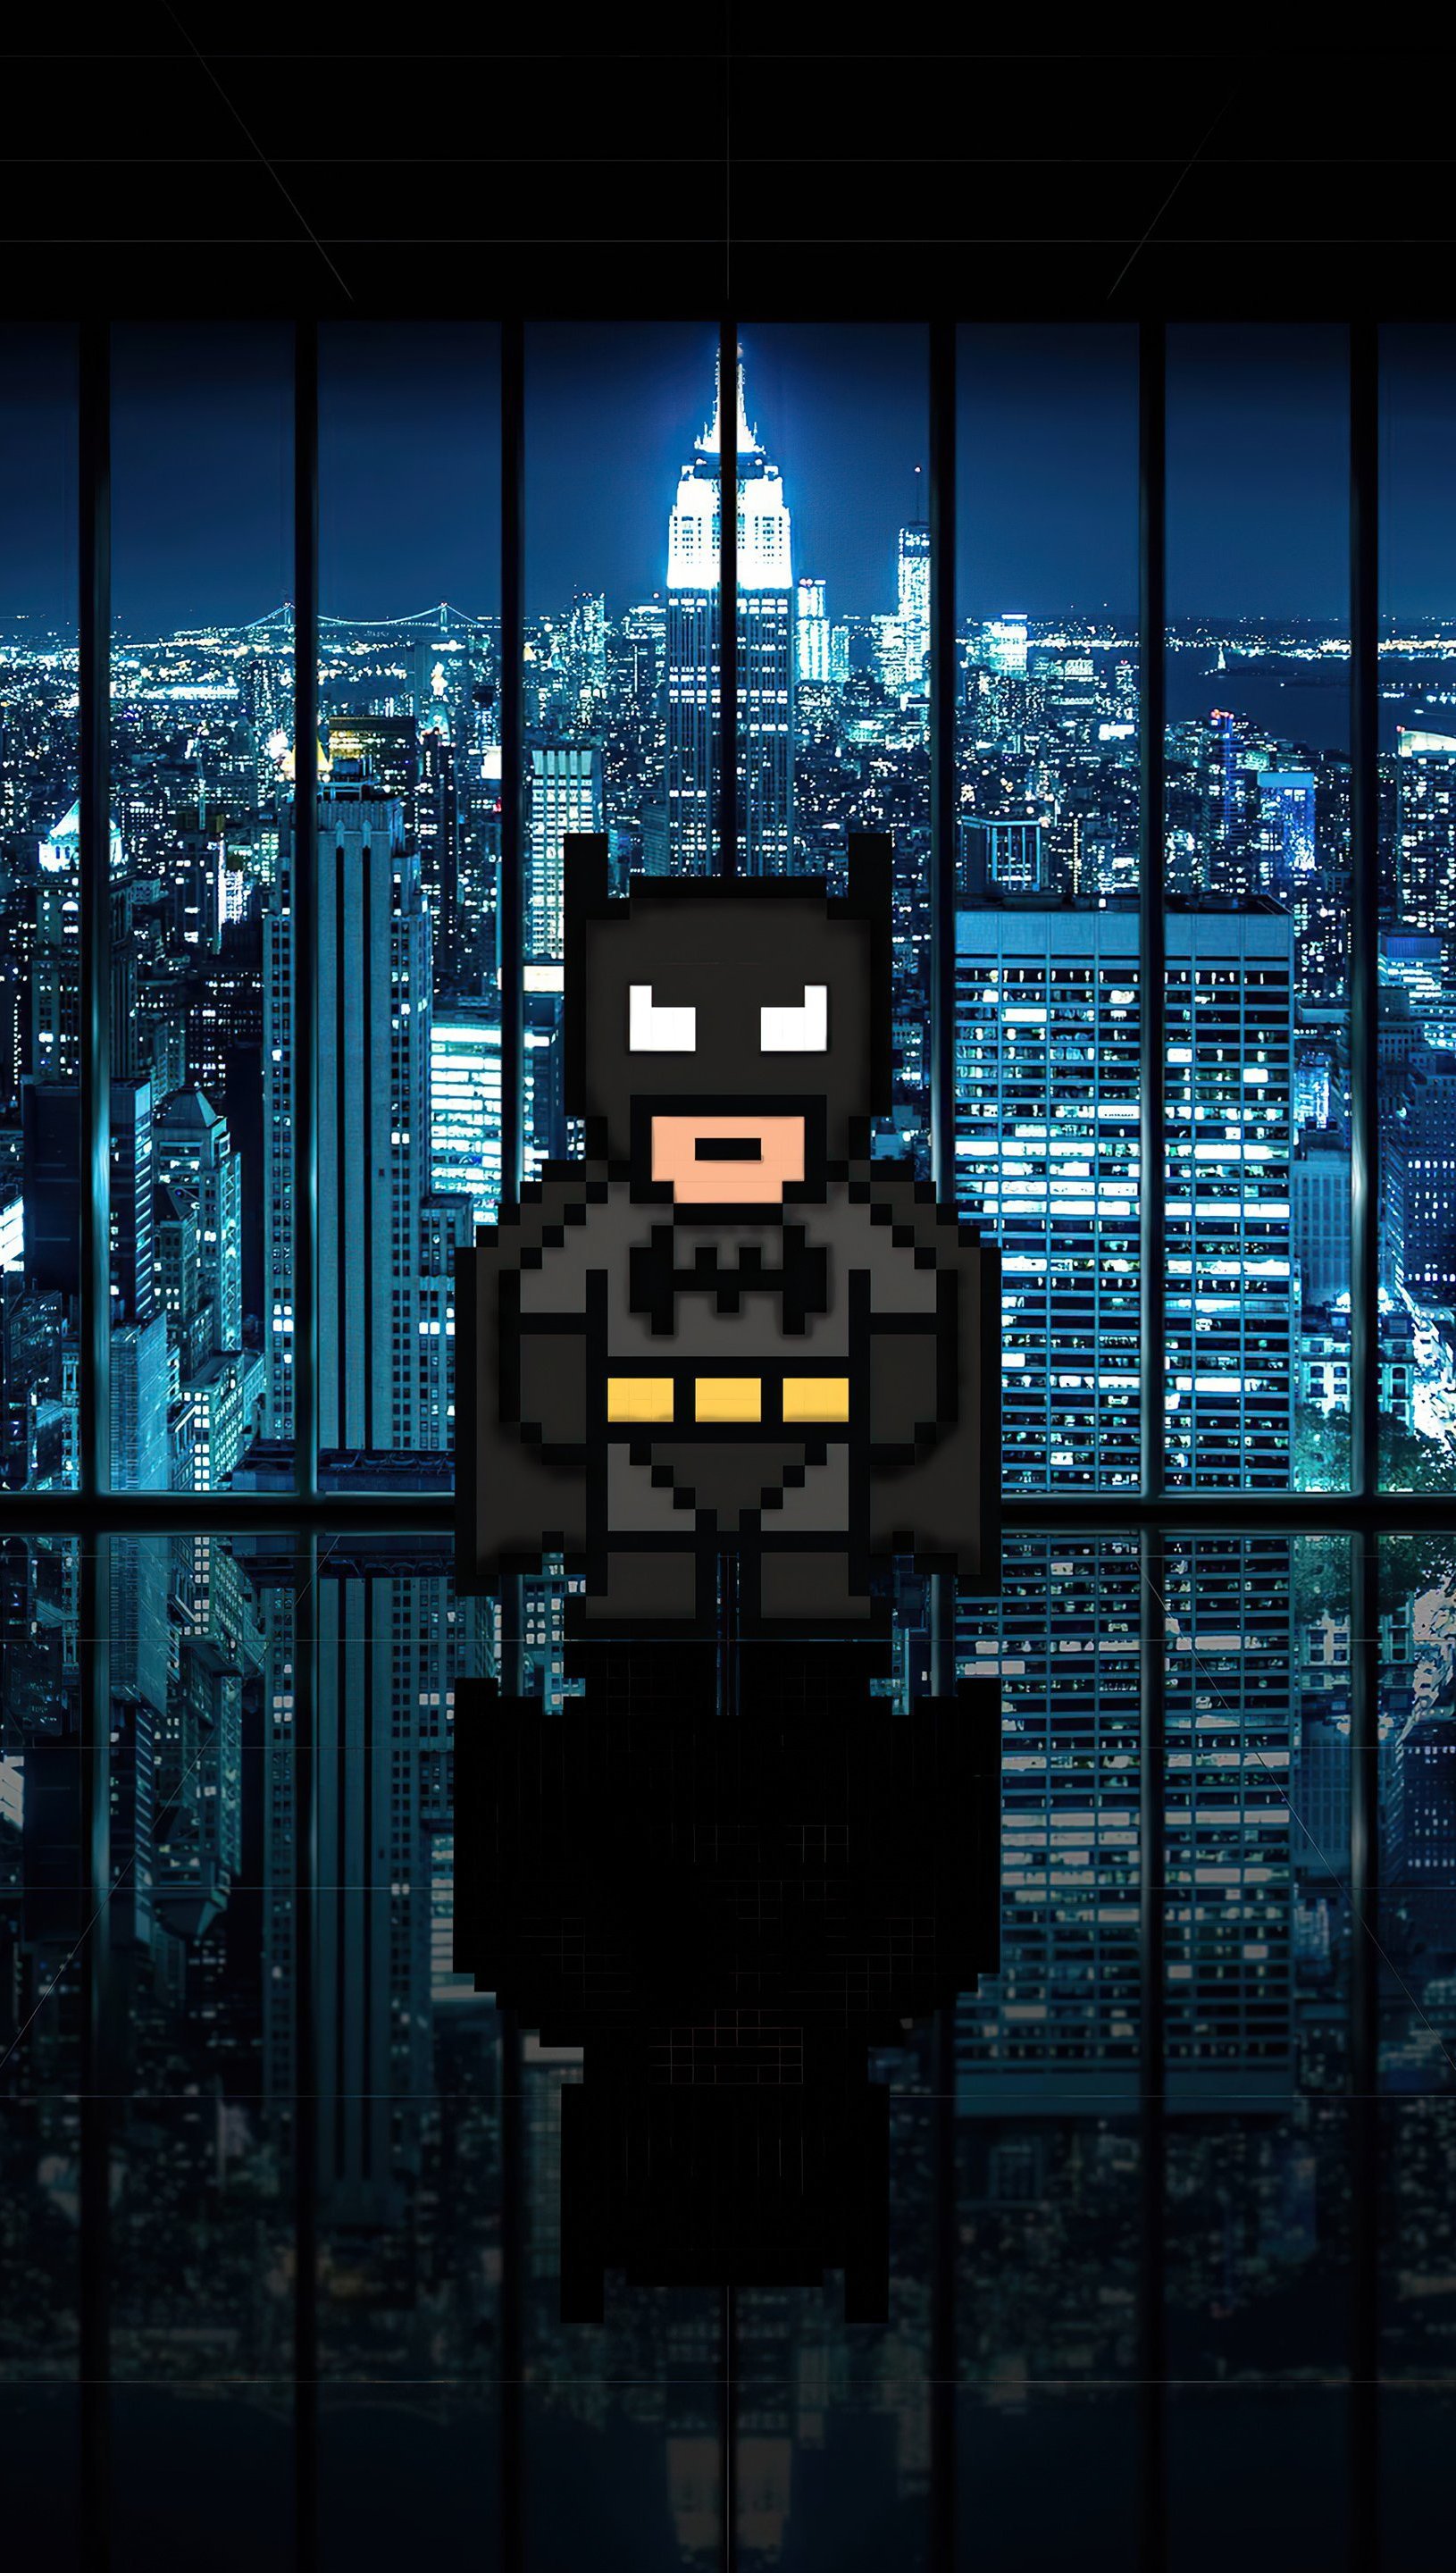 Wallpaper Batman 8 Bits Vertical